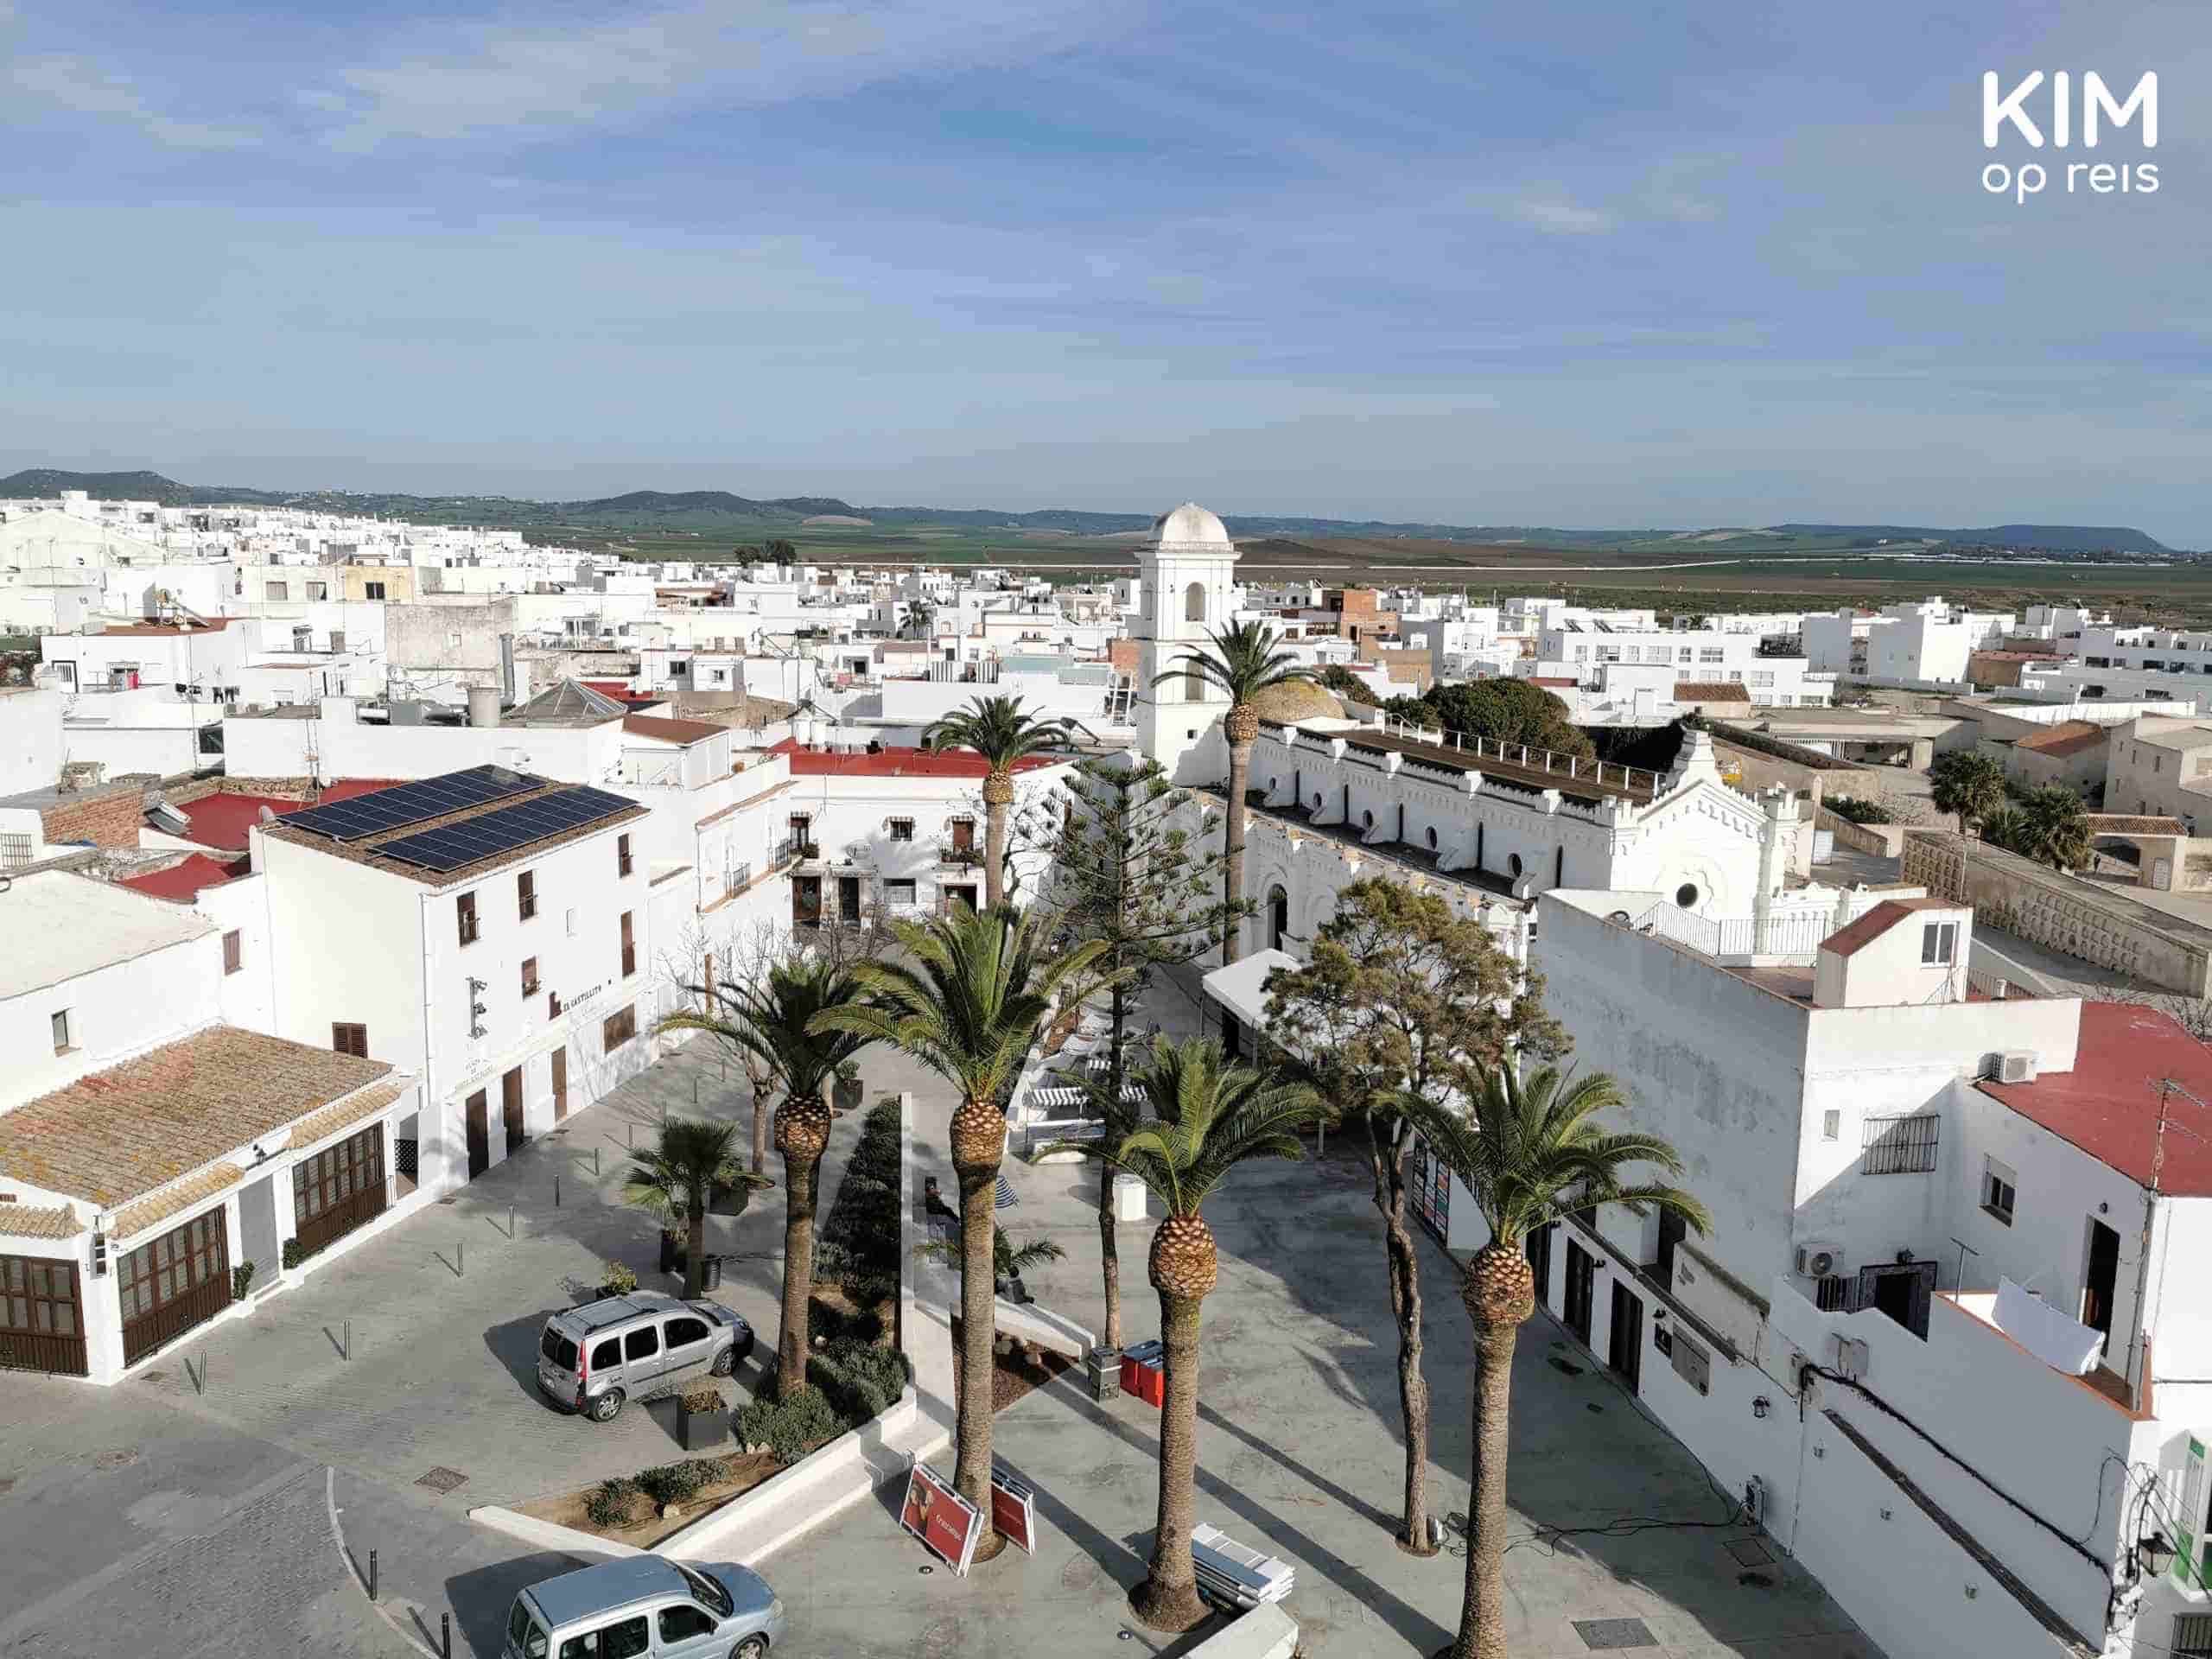 Best Things To Do in Conil de la Frontera, Spain (2023) in 2023